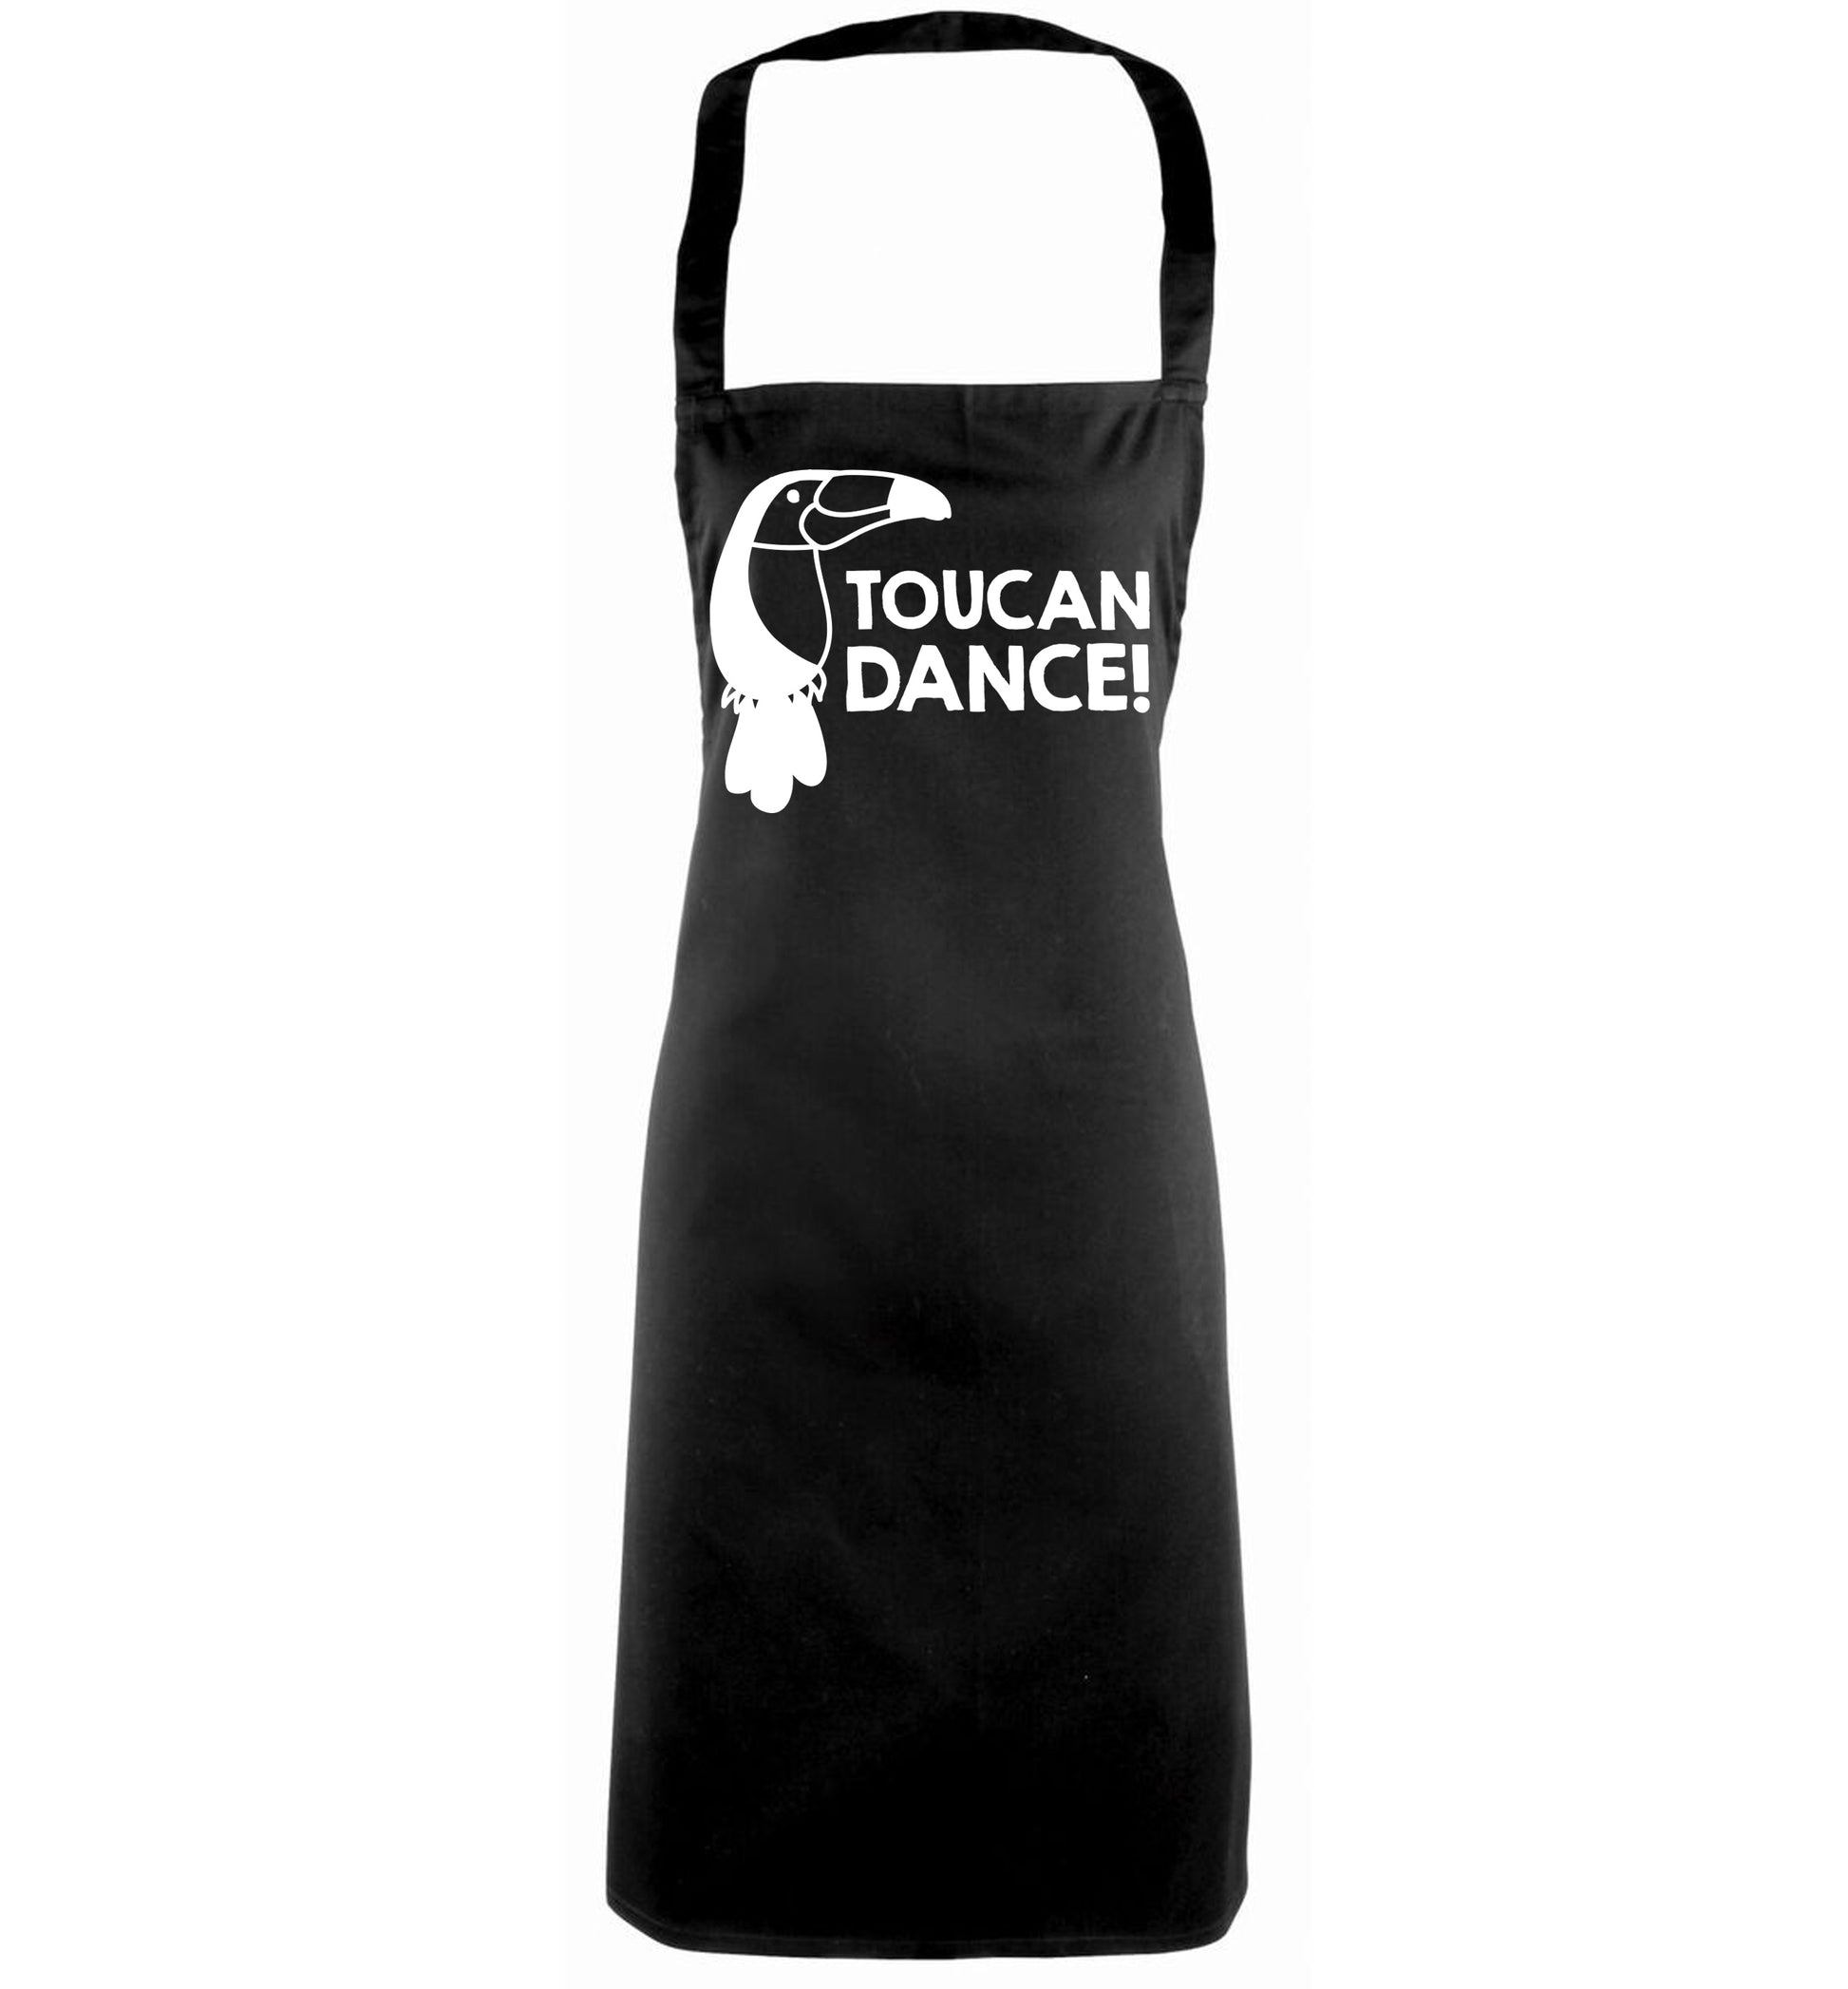 Toucan dance black apron